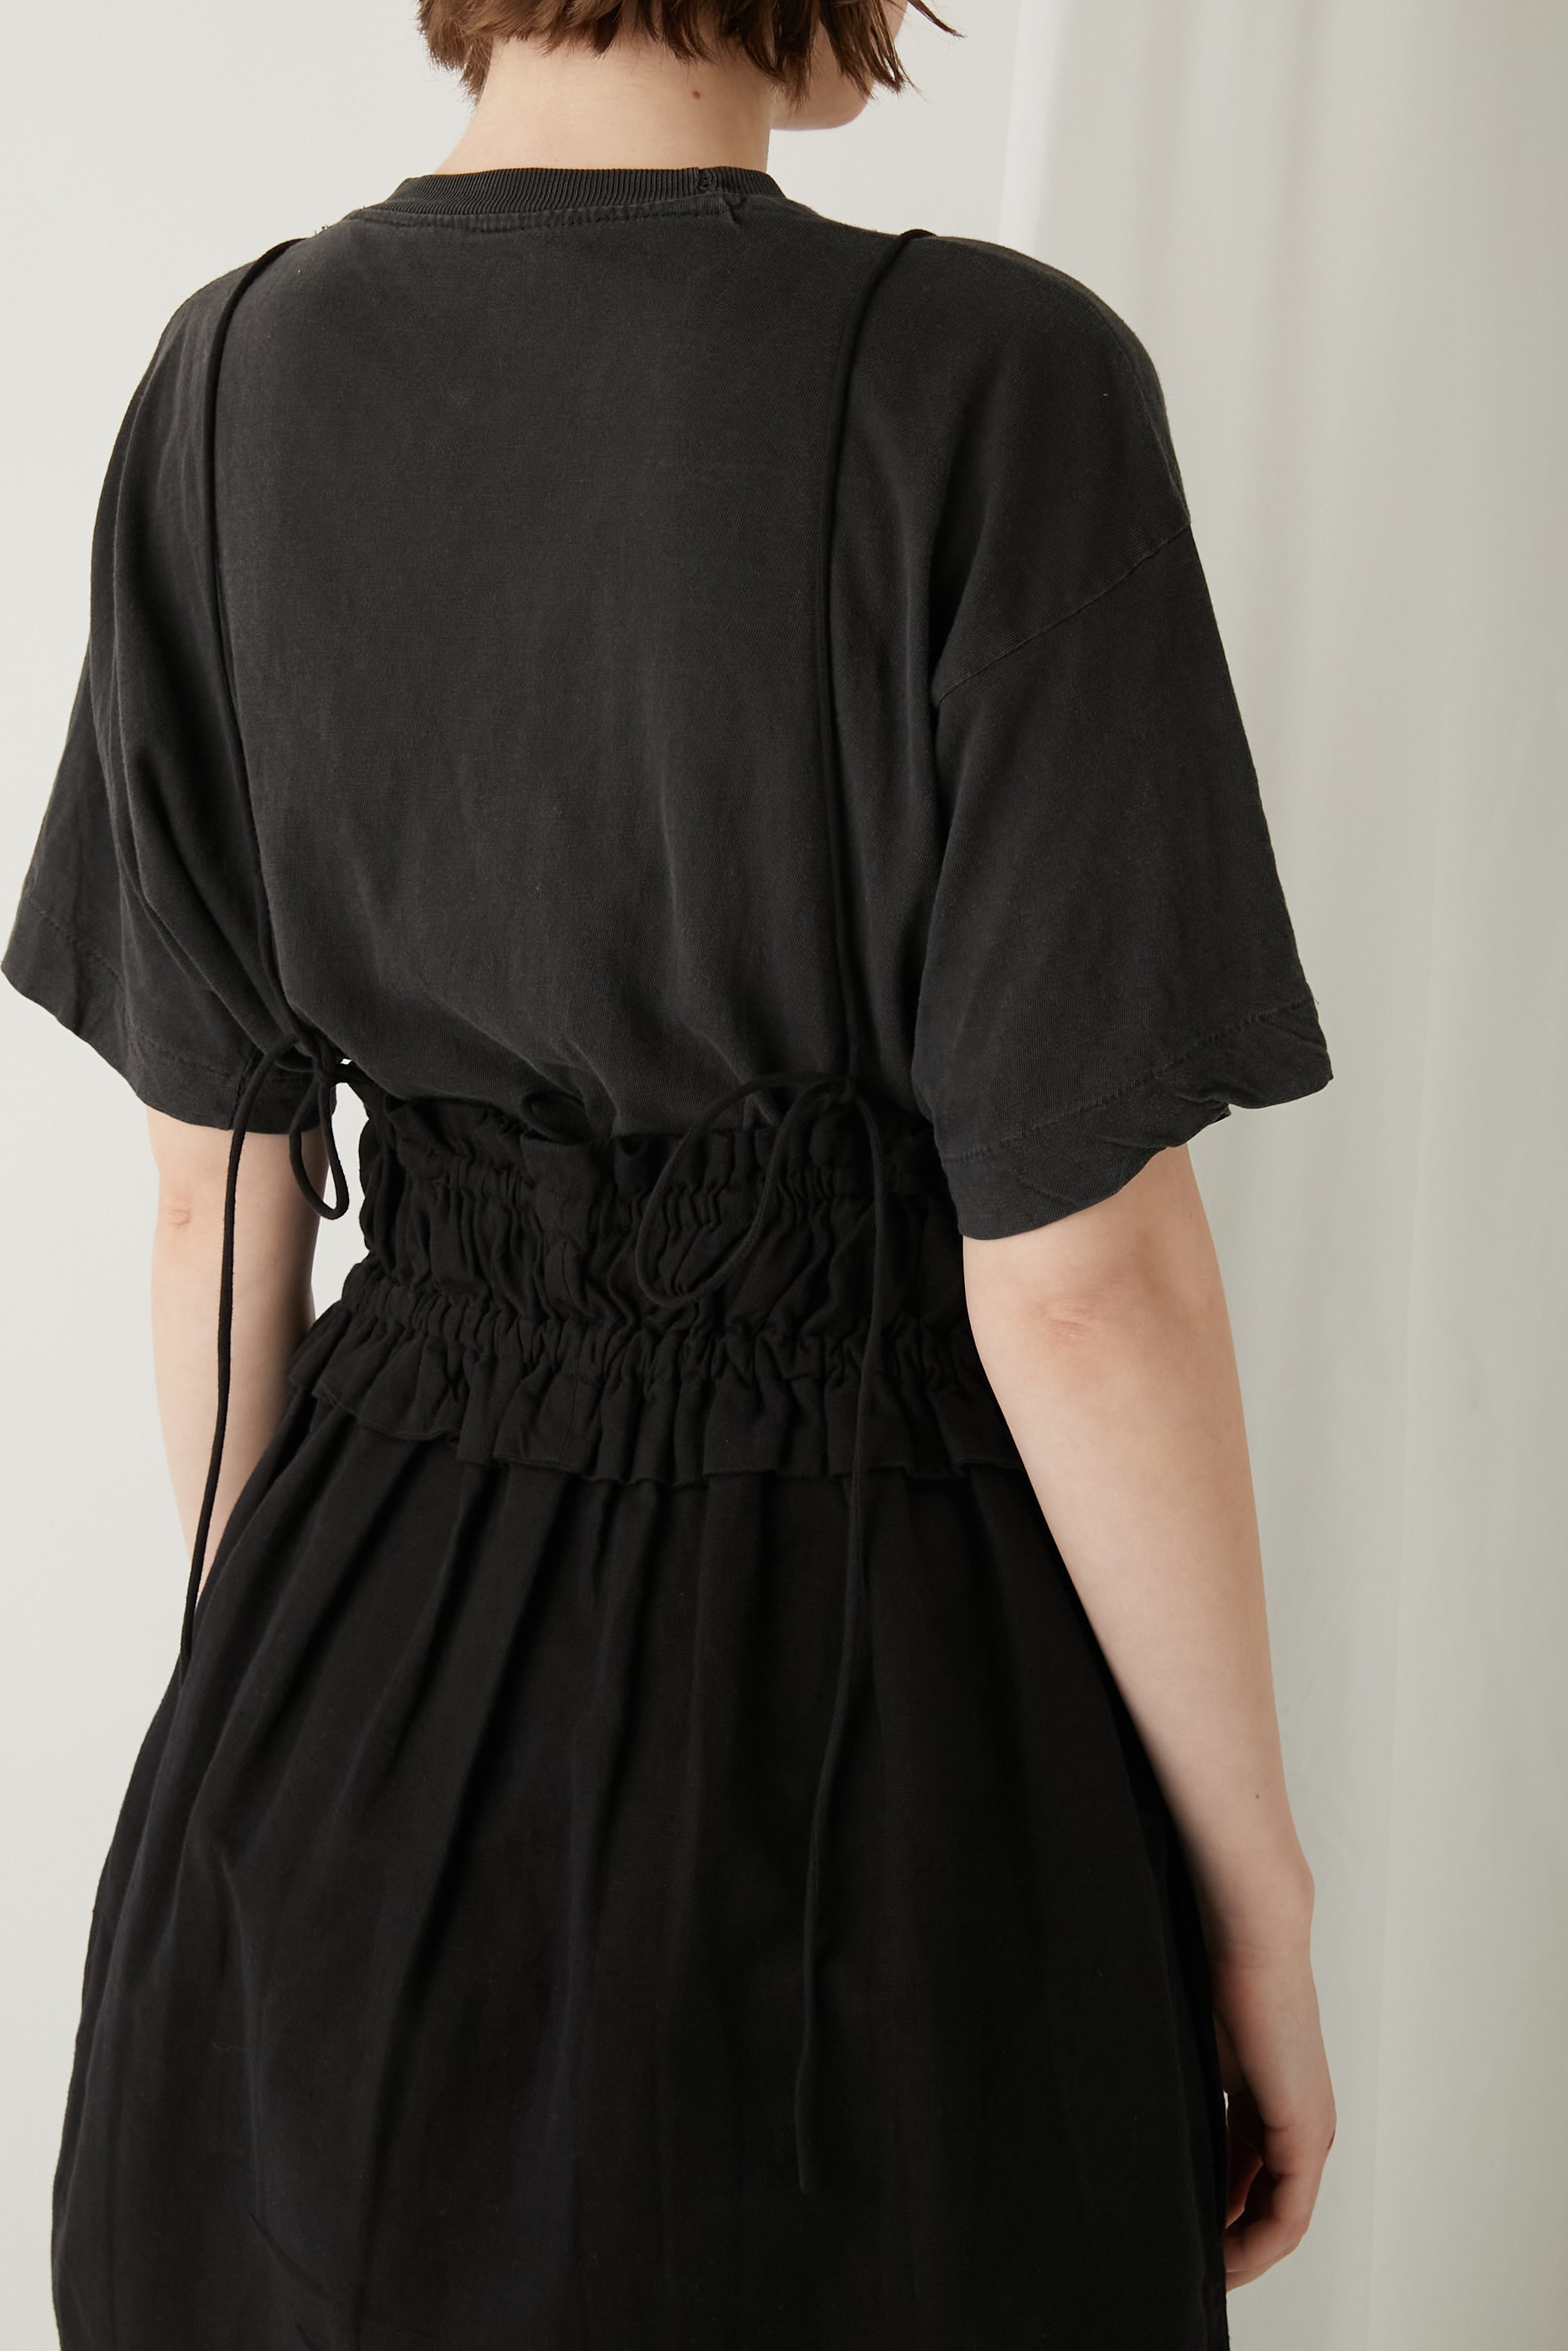 cotton linen long camisole │ BLACK